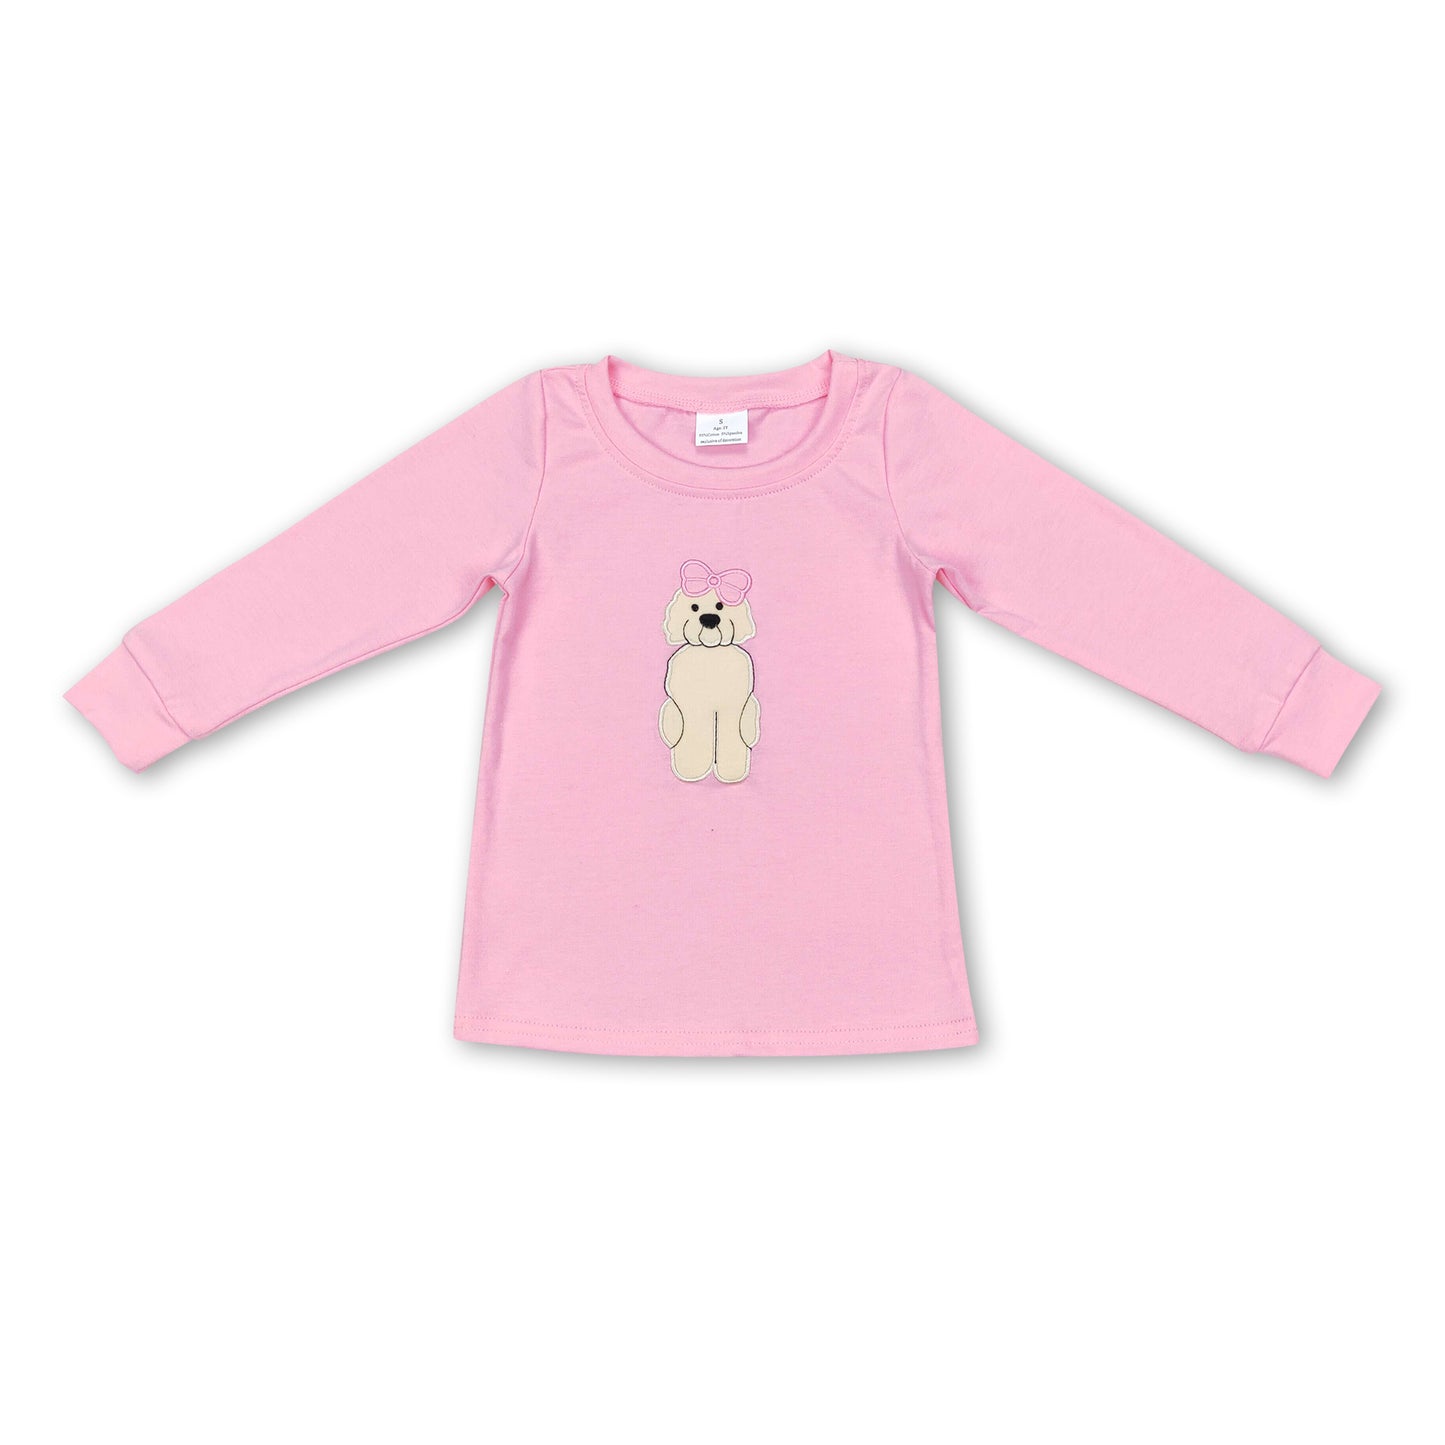 Pink dog bow long sleeves kids girls shirt